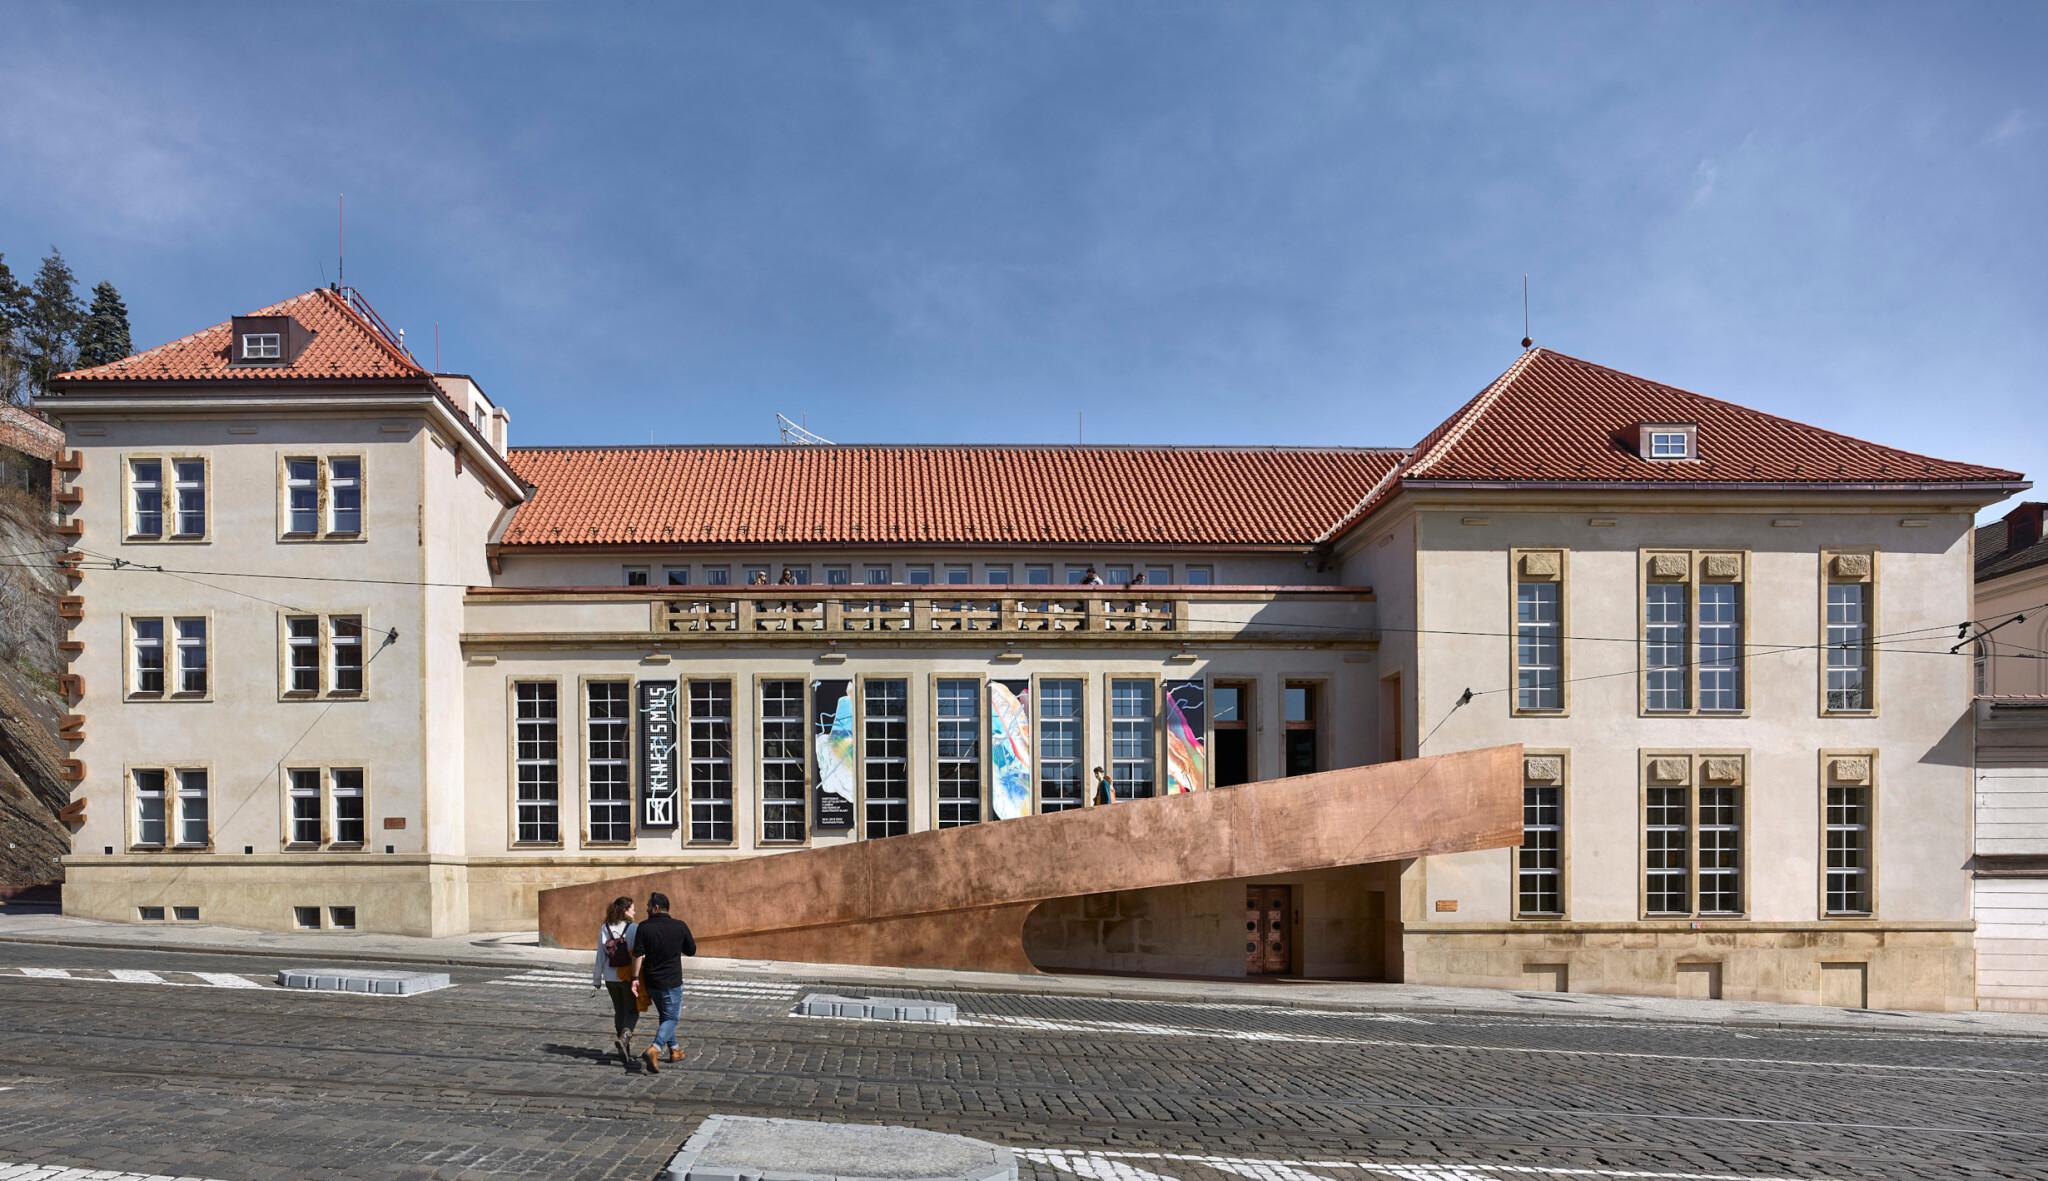 Kunsthalle byla výzva, říkají její architekti. Z trafostanice je galerie světového formátu